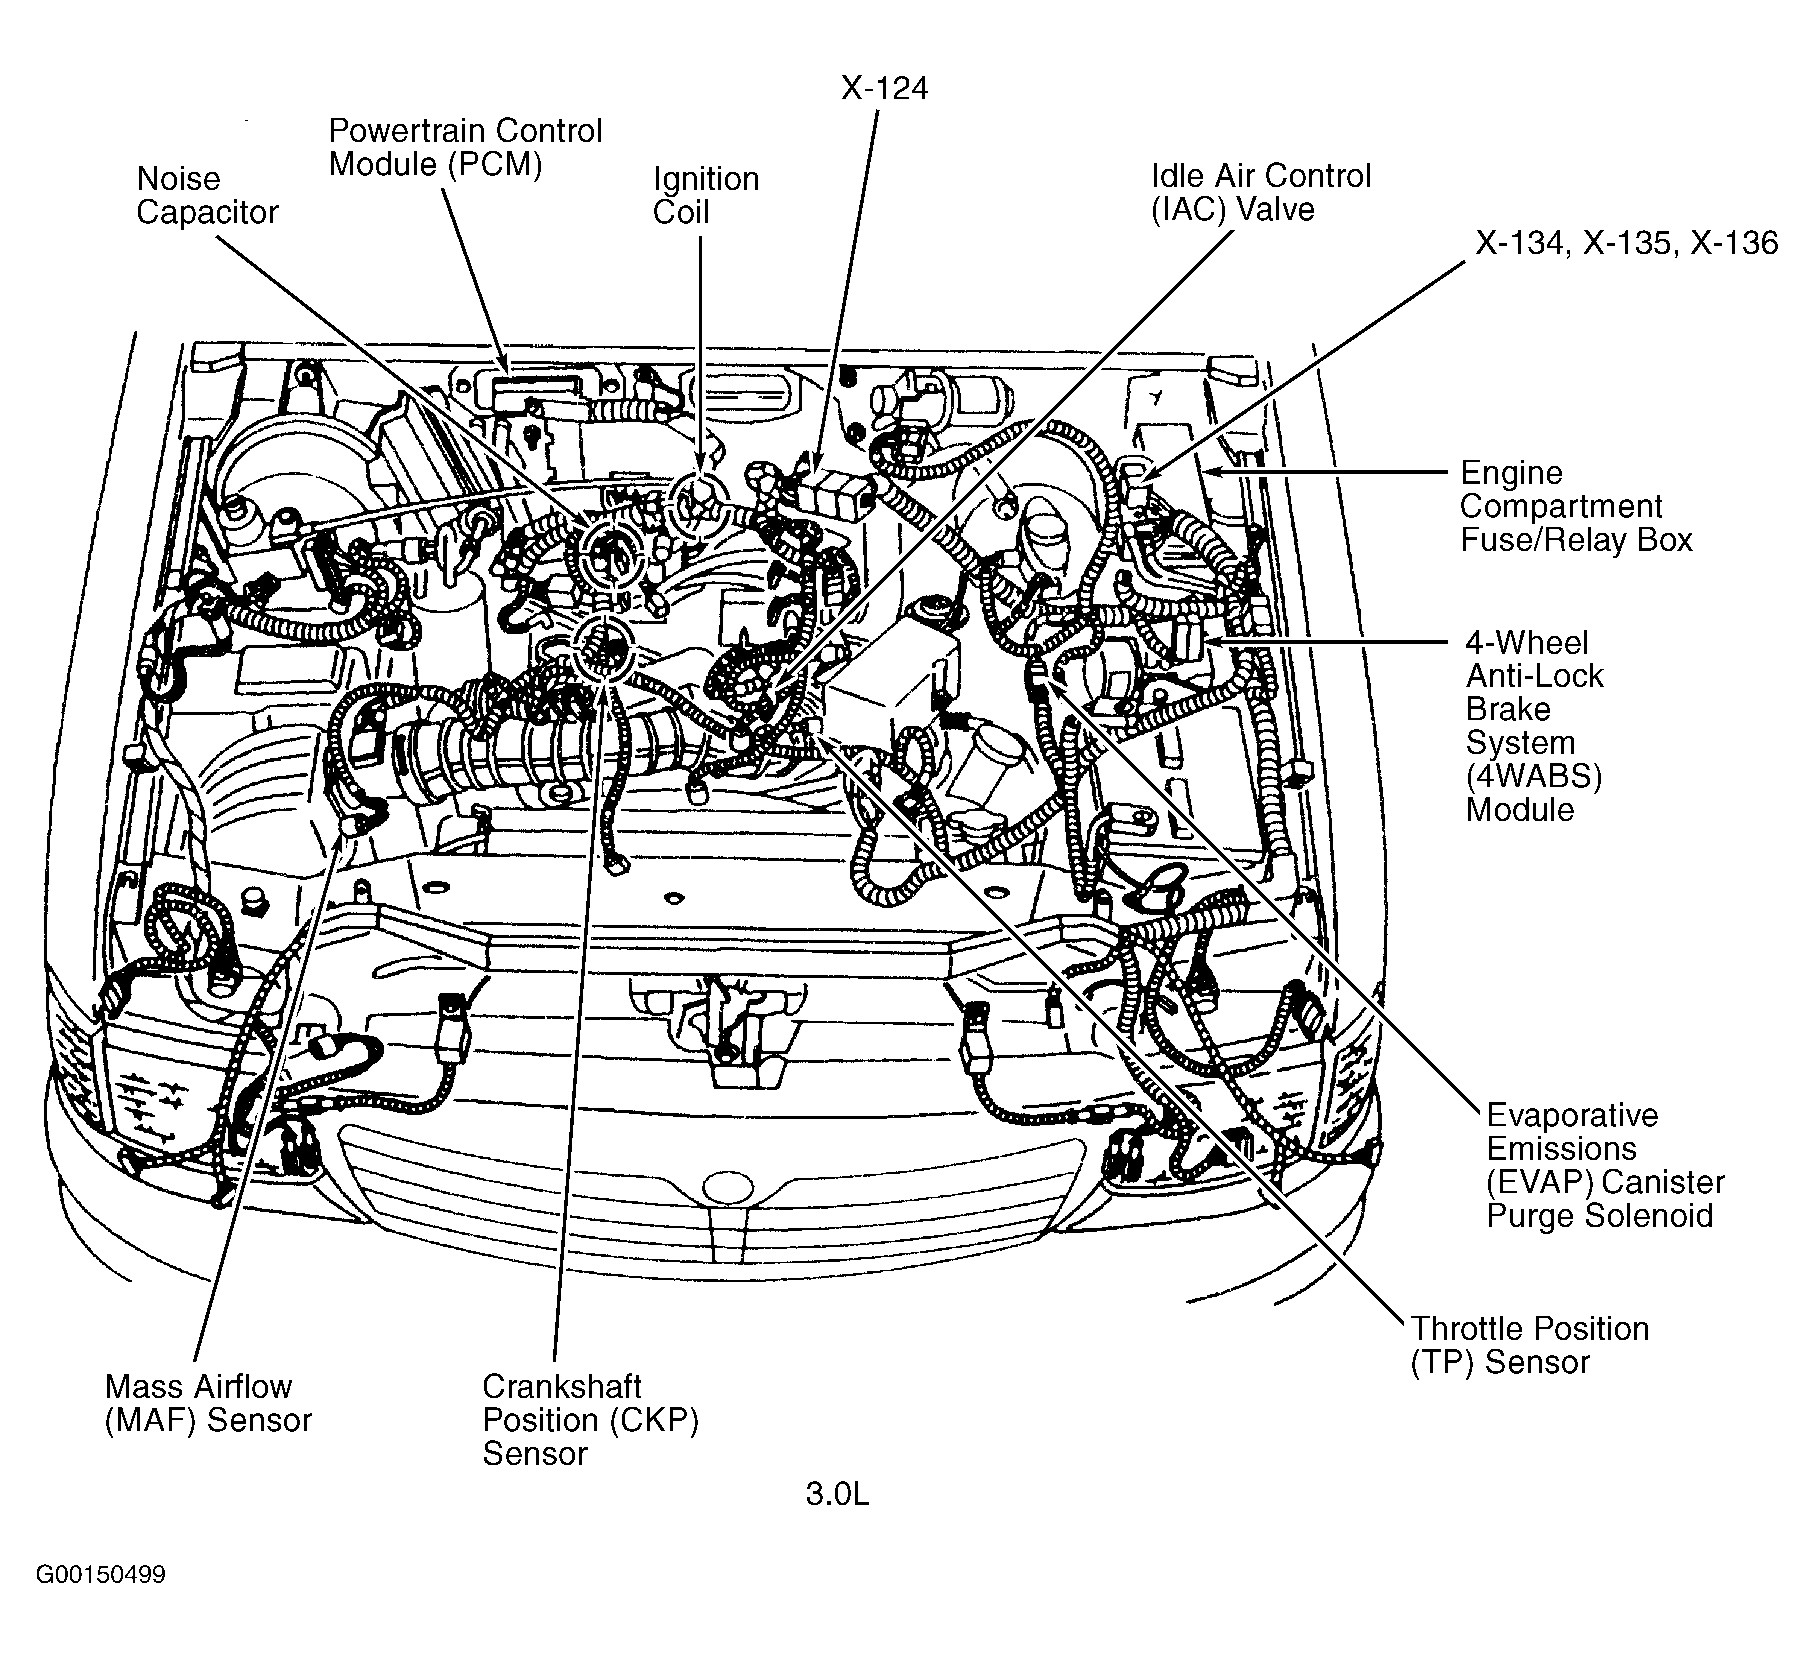 2000 Cadillac Deville Engine Diagram 2004 Mazda Rx8 Engine Diagram Mazda Wiring Diagrams Instructions